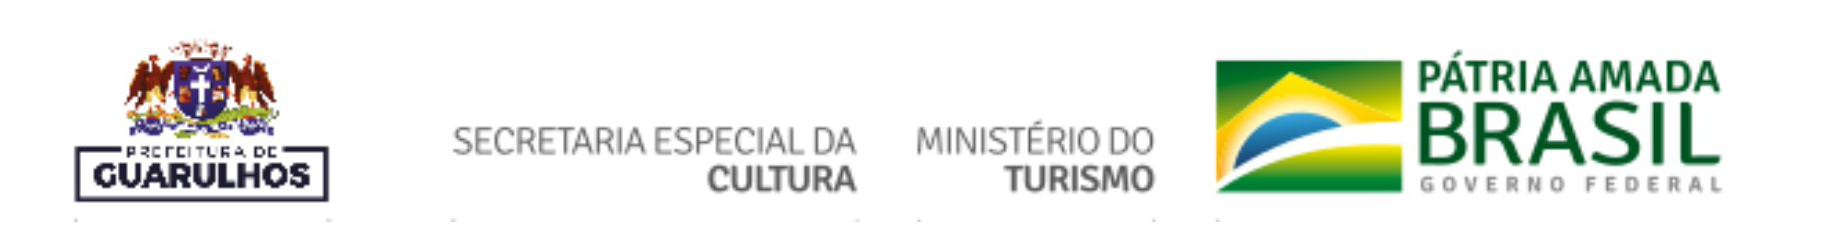 Prefeitura de Guarulhos, Secretaria Especial da Cultura, Ministério do Turismo, Pátria Amada Brasil Governo Federal